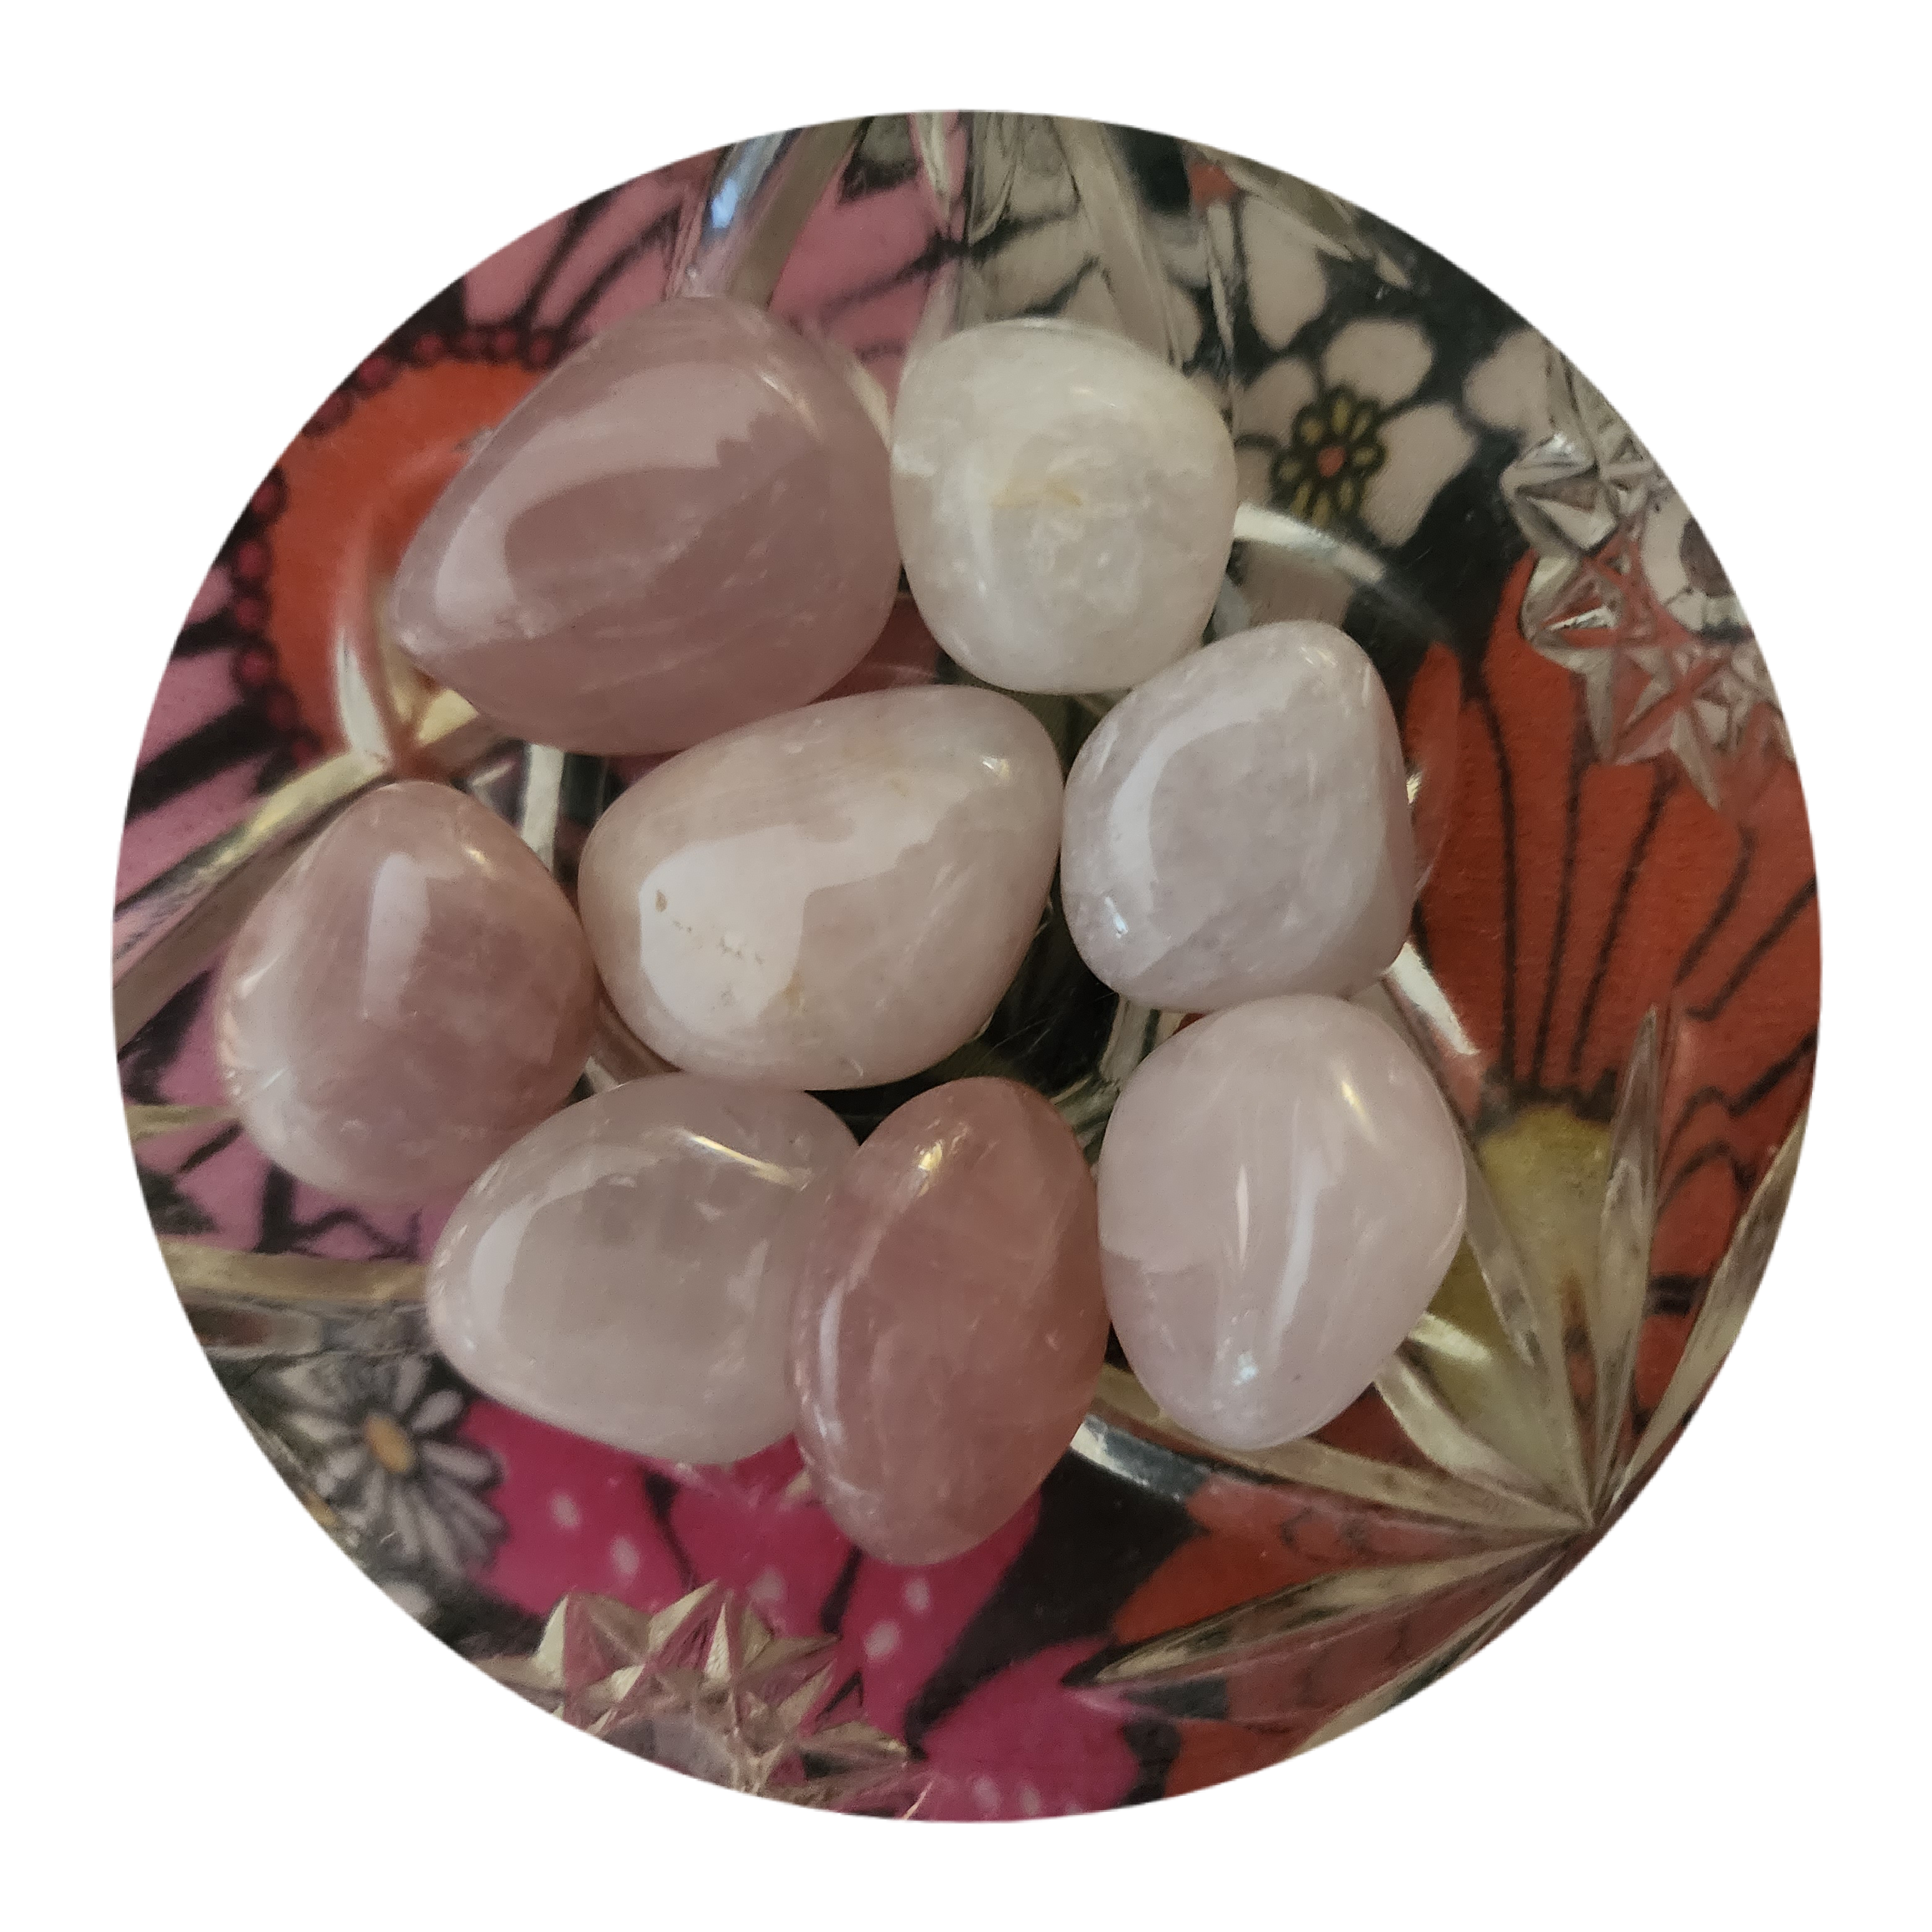 Rose Quartz Tumble Stones - Love, Understanding, Friendship